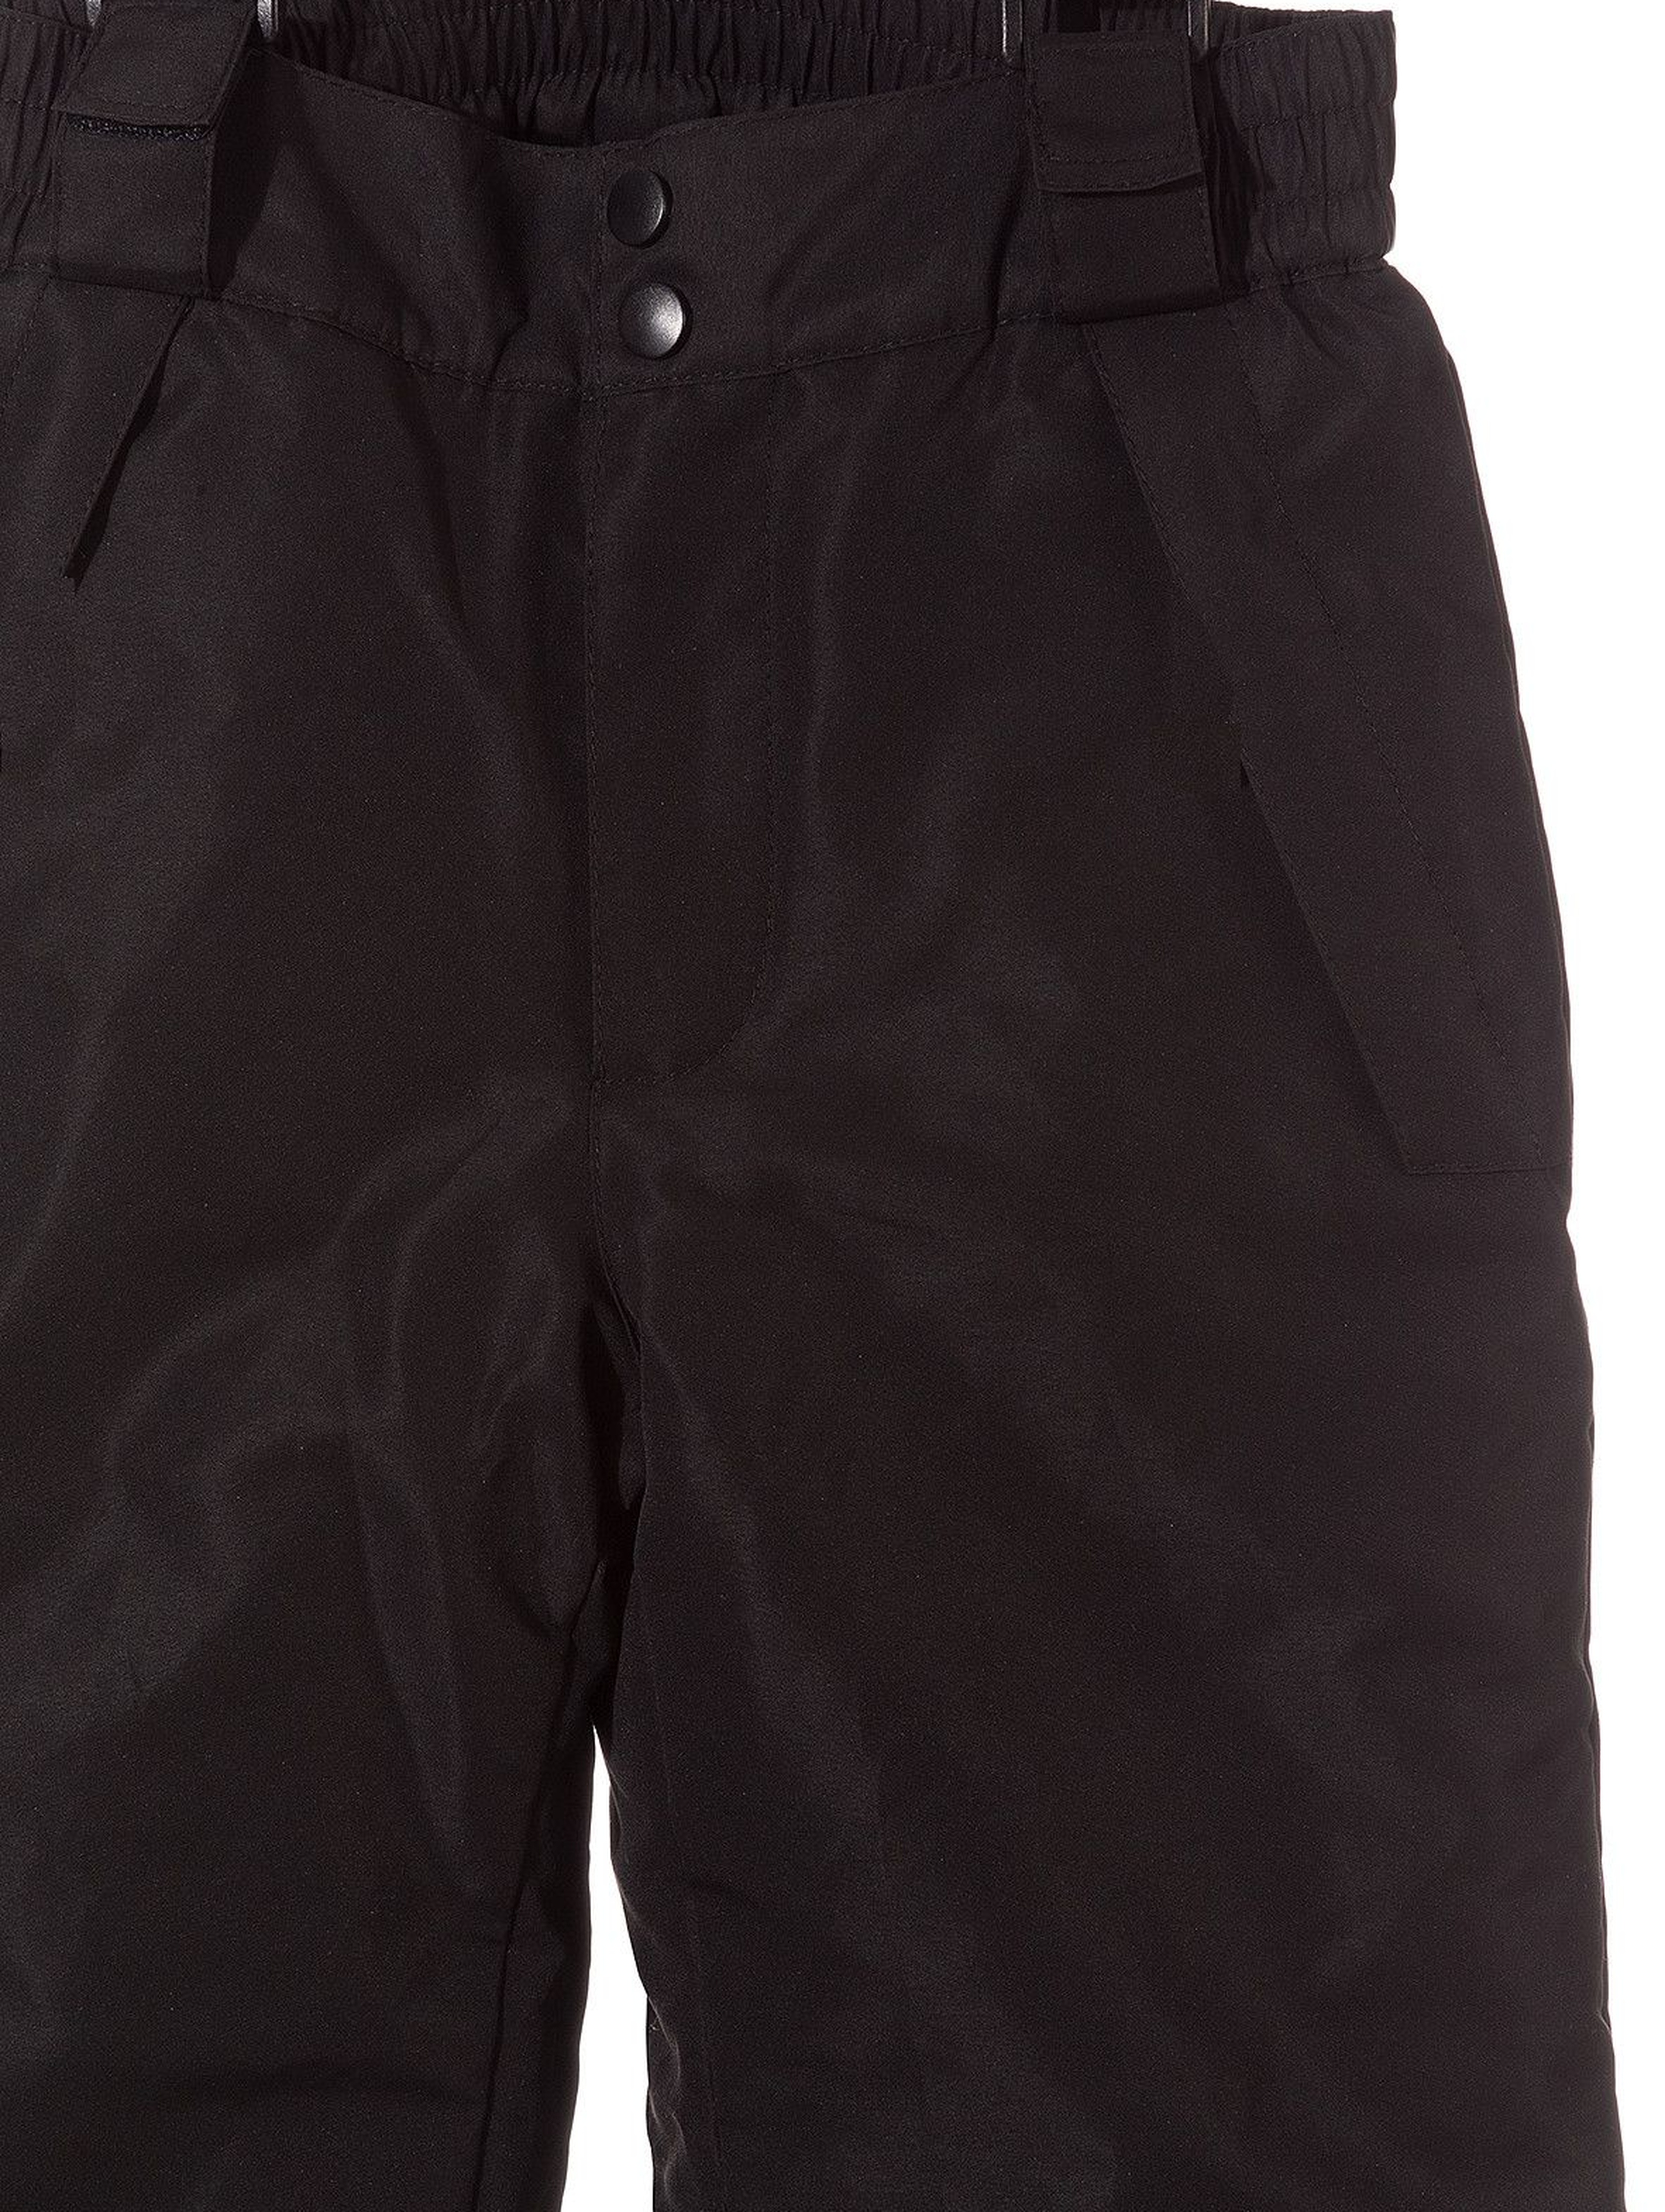 Spodnie narciarskie chłopięce basic- czarne z elementami odblaskowymi